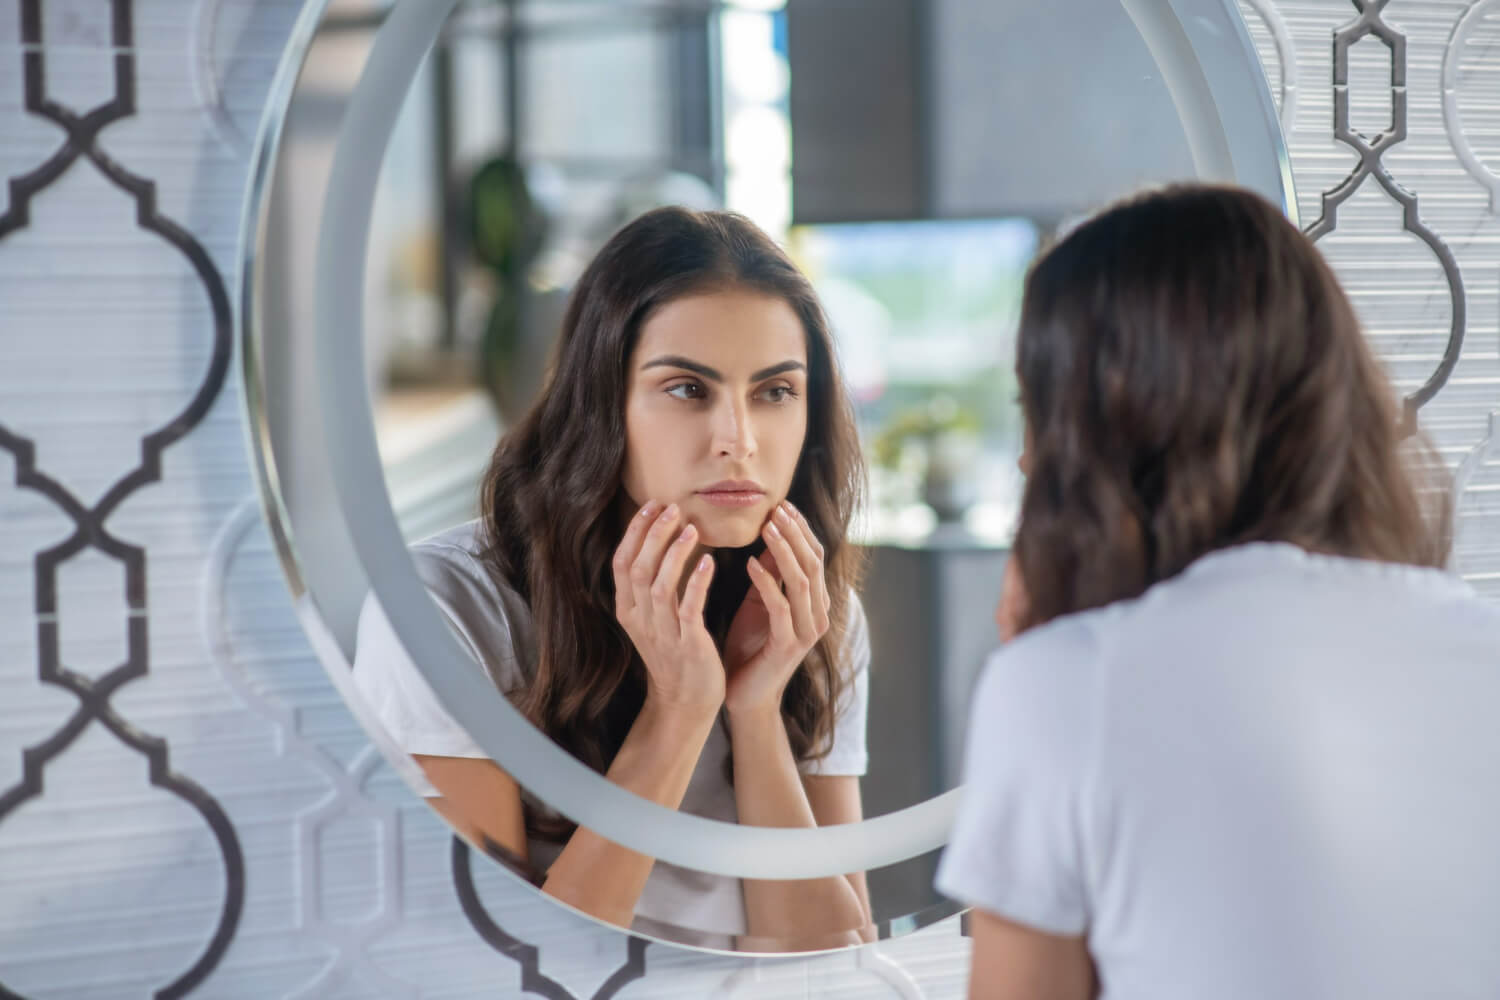 Mulher em frente ao espelho checando se apresenta sintomas do hisurtismo